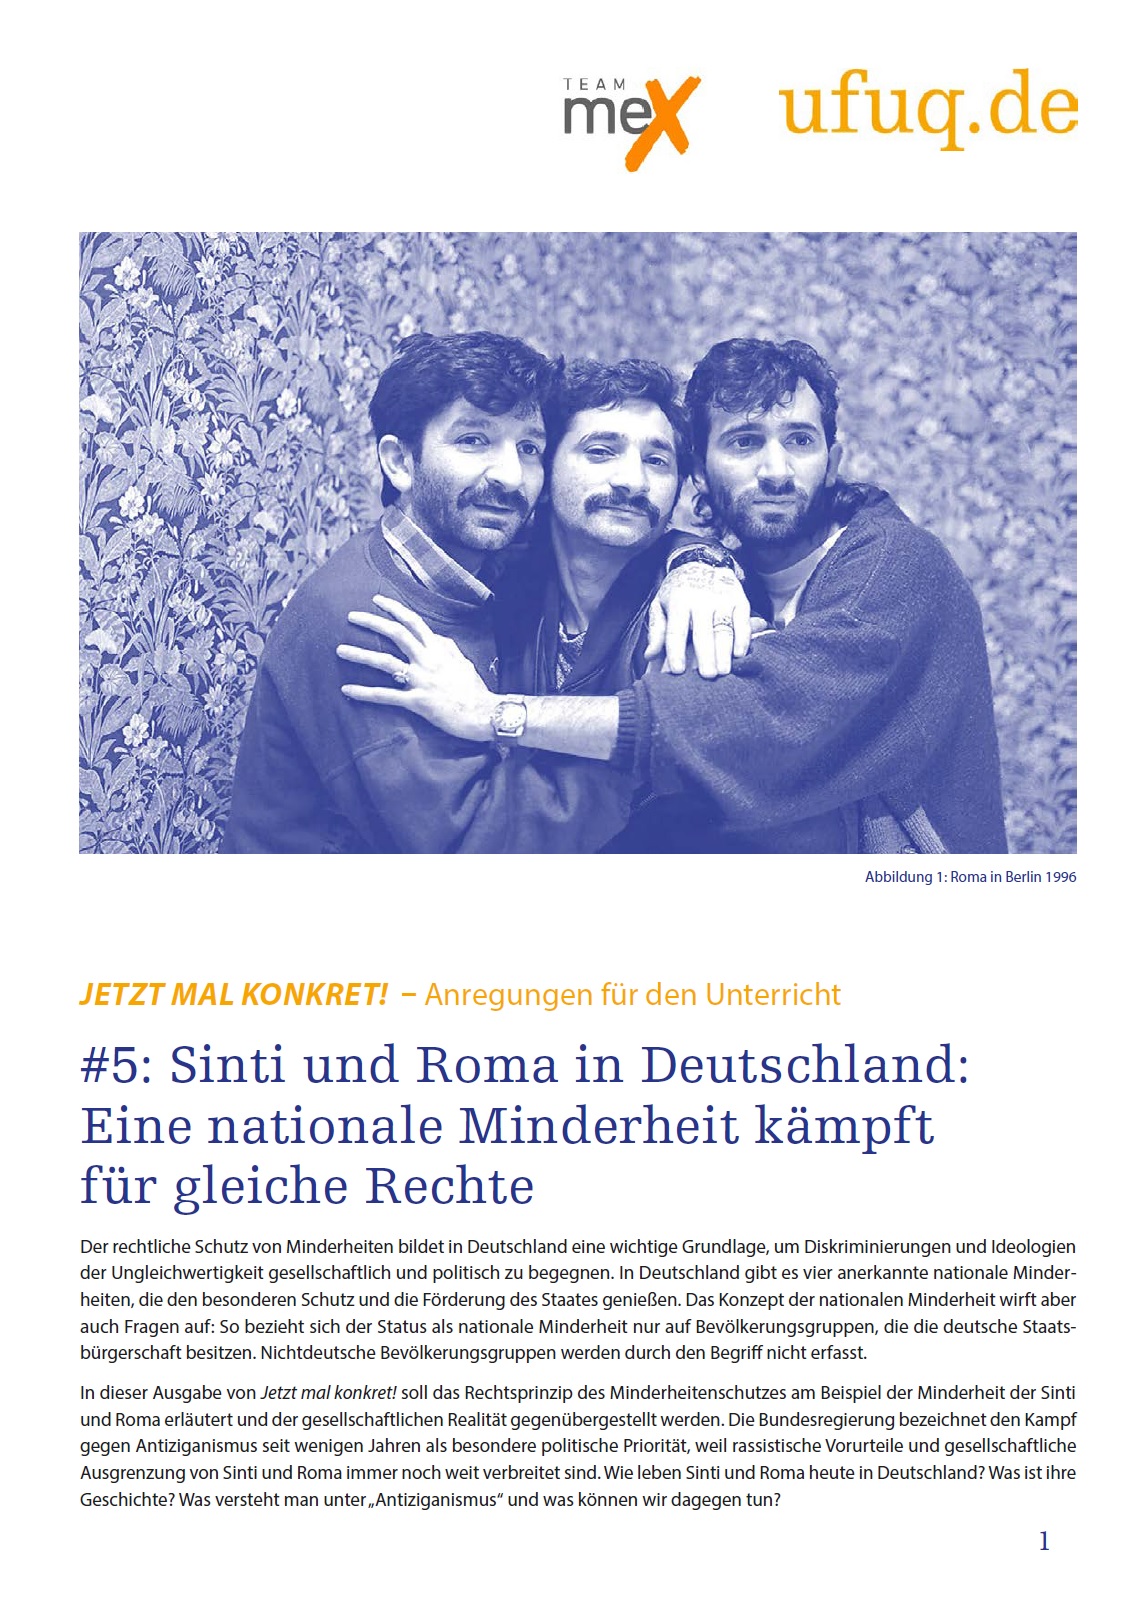 Auf dem Bild sieht man drei Männer, die sich umarmen und nach vorne schauen. Darunter steht Jetzt mal konkret #5 Sinti und Roma in Deutschland